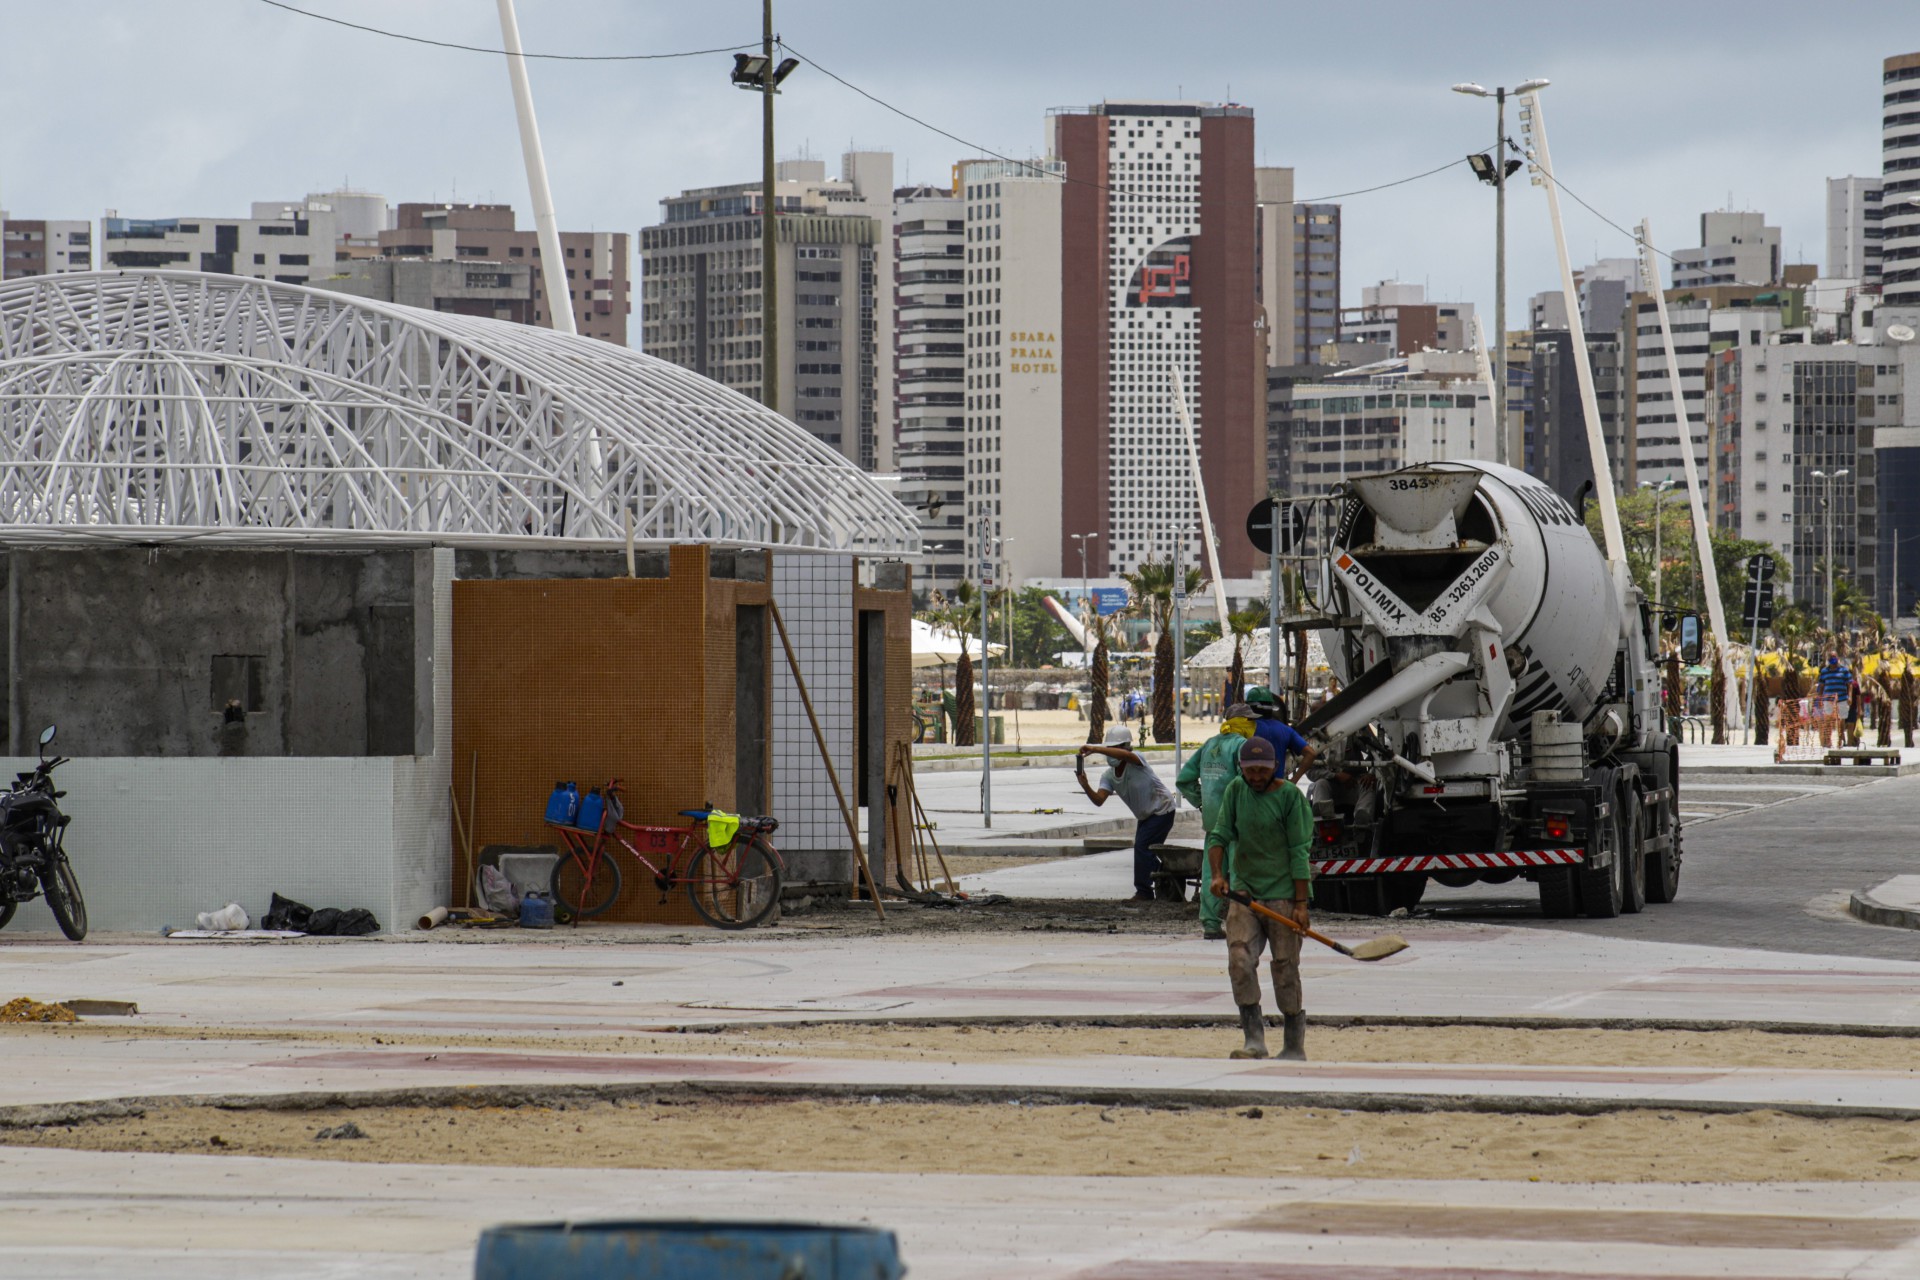 CONCLUSÃO das obras de revitalização da Beira-Mar estão no orçamento de 2021 da Prefeitura de Fortaleza. (Foto: Thais Mesquita/OPOVO) (Foto: Thais Mesquita)